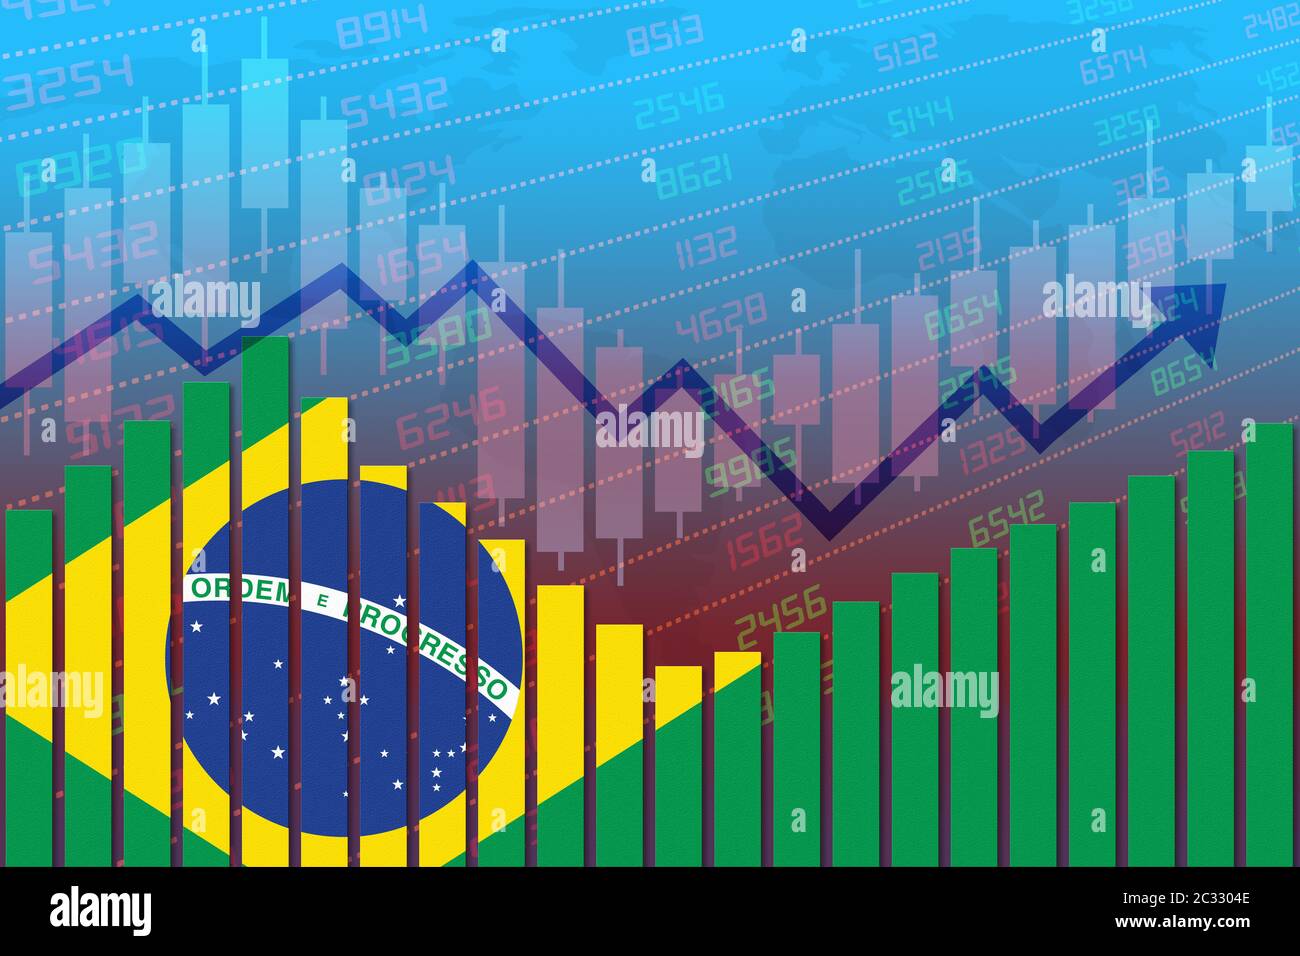 Flagge Brasiliens auf Balkendiagramm Konzept der wirtschaftlichen Erholung und der Verbesserung der Wirtschaft nach der Krise wie Covid-19 oder andere Katastrophe wie Wirtschaft und busi Stockfoto